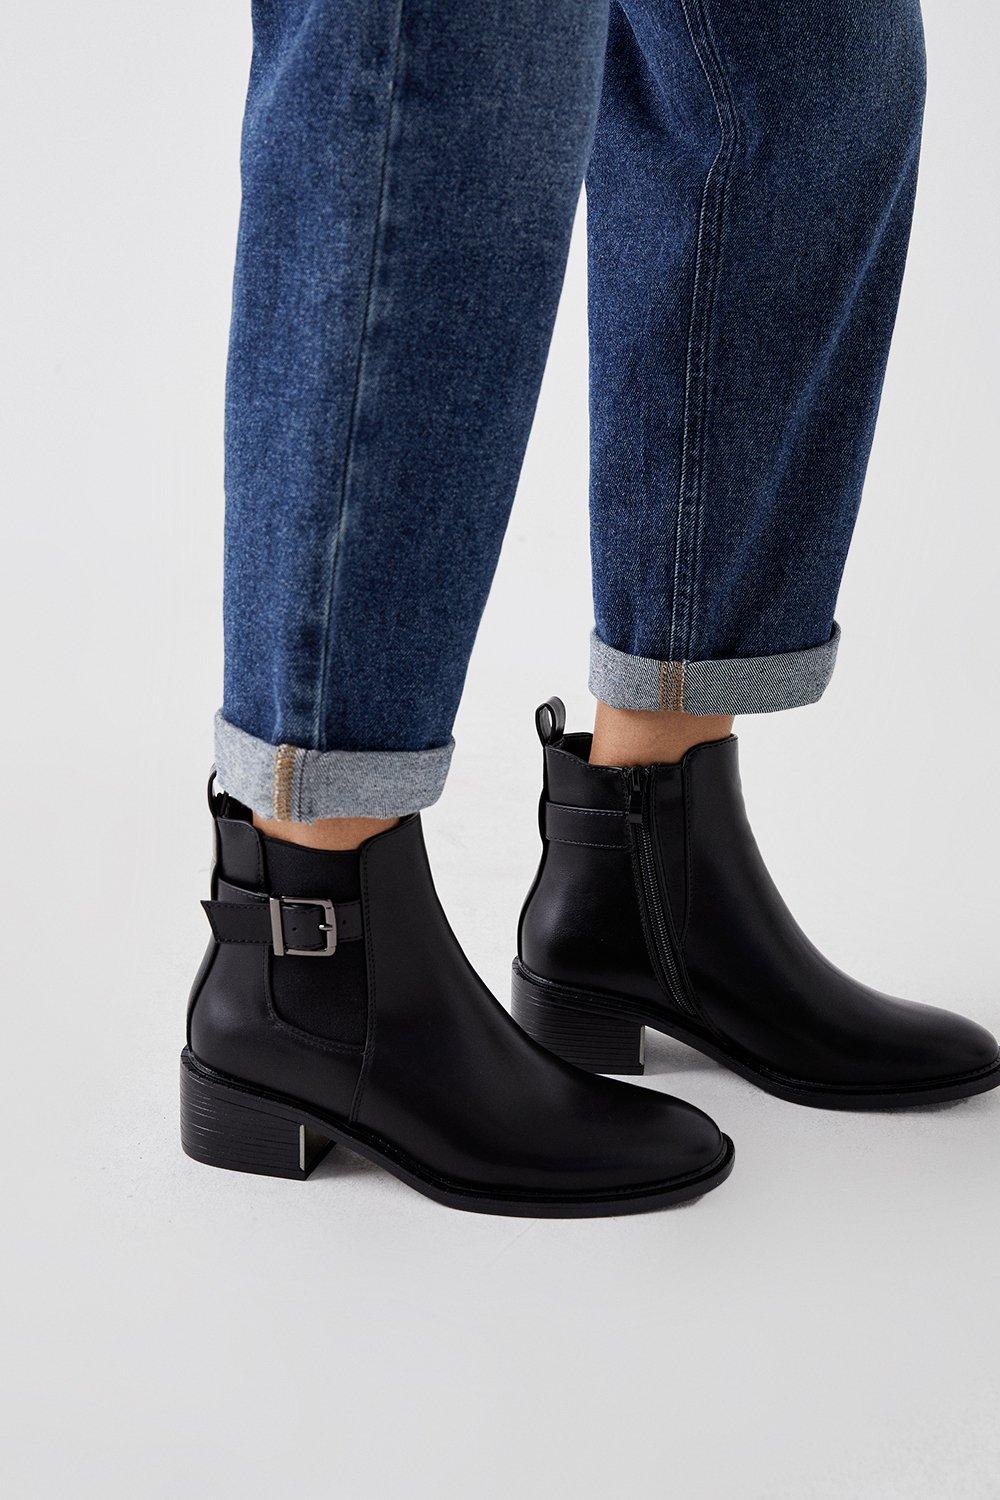 Women’s Faith: Andrea Buckle Trim Ankle Boots - black - 7